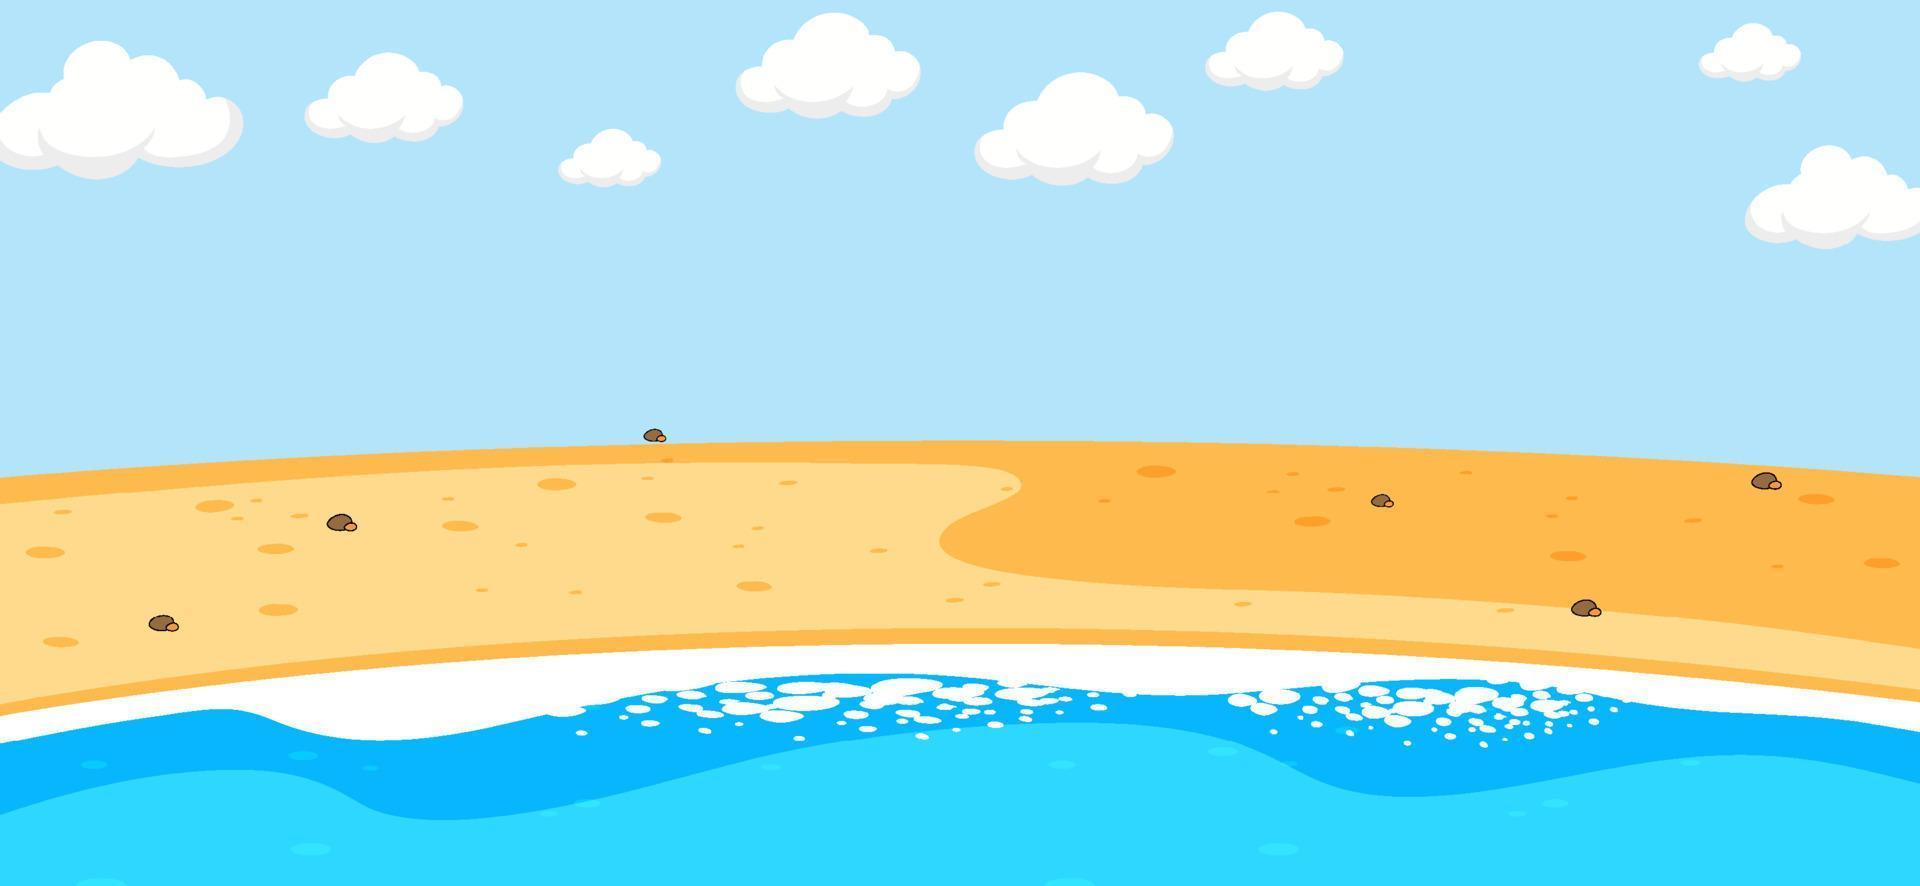 Escena de playa vacía con cielo en blanco en estilo de dibujos animados vector